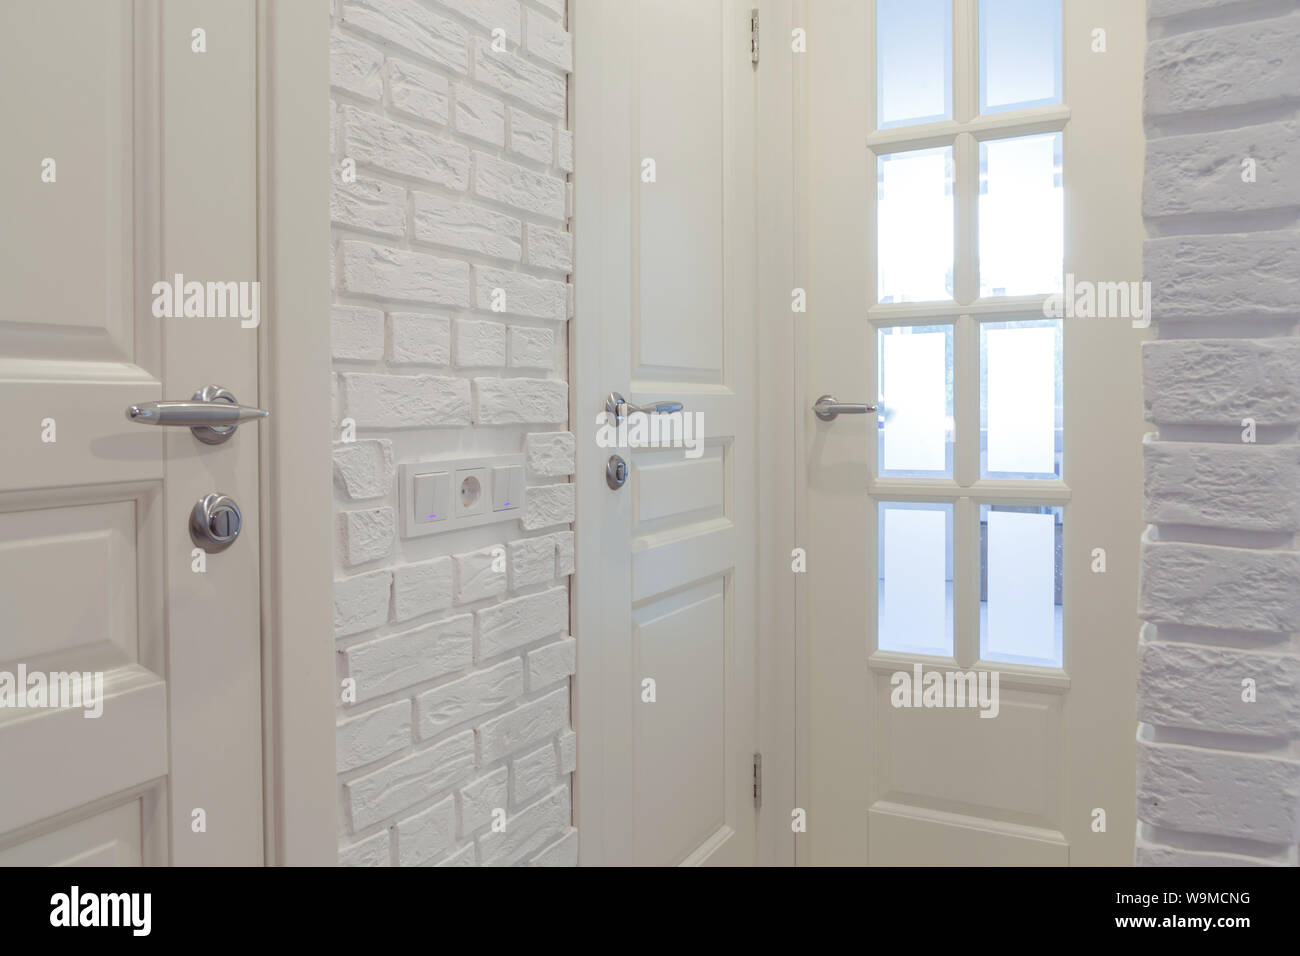 Les portes classiques blanc et blanc mur de briques. Banque D'Images